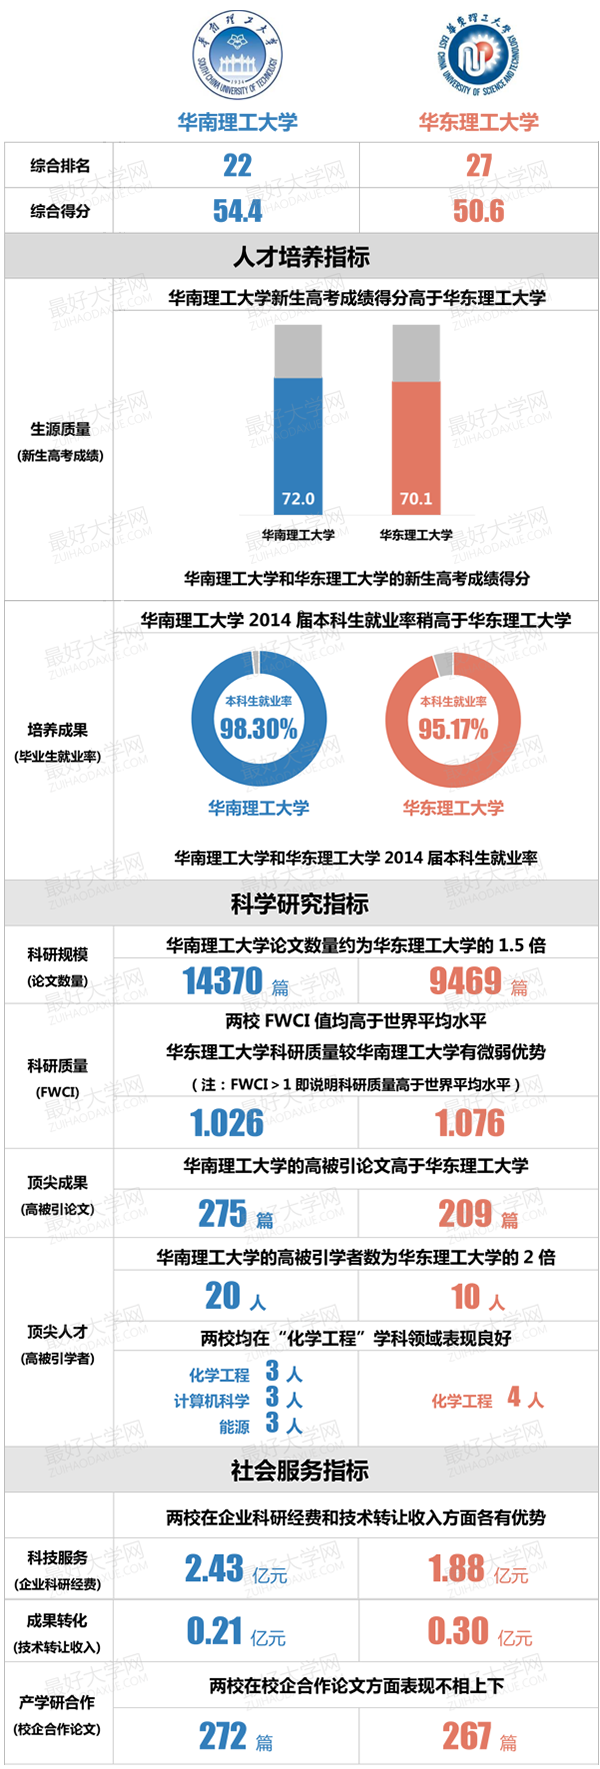 华南理工大学和华东理工大学的对比分析